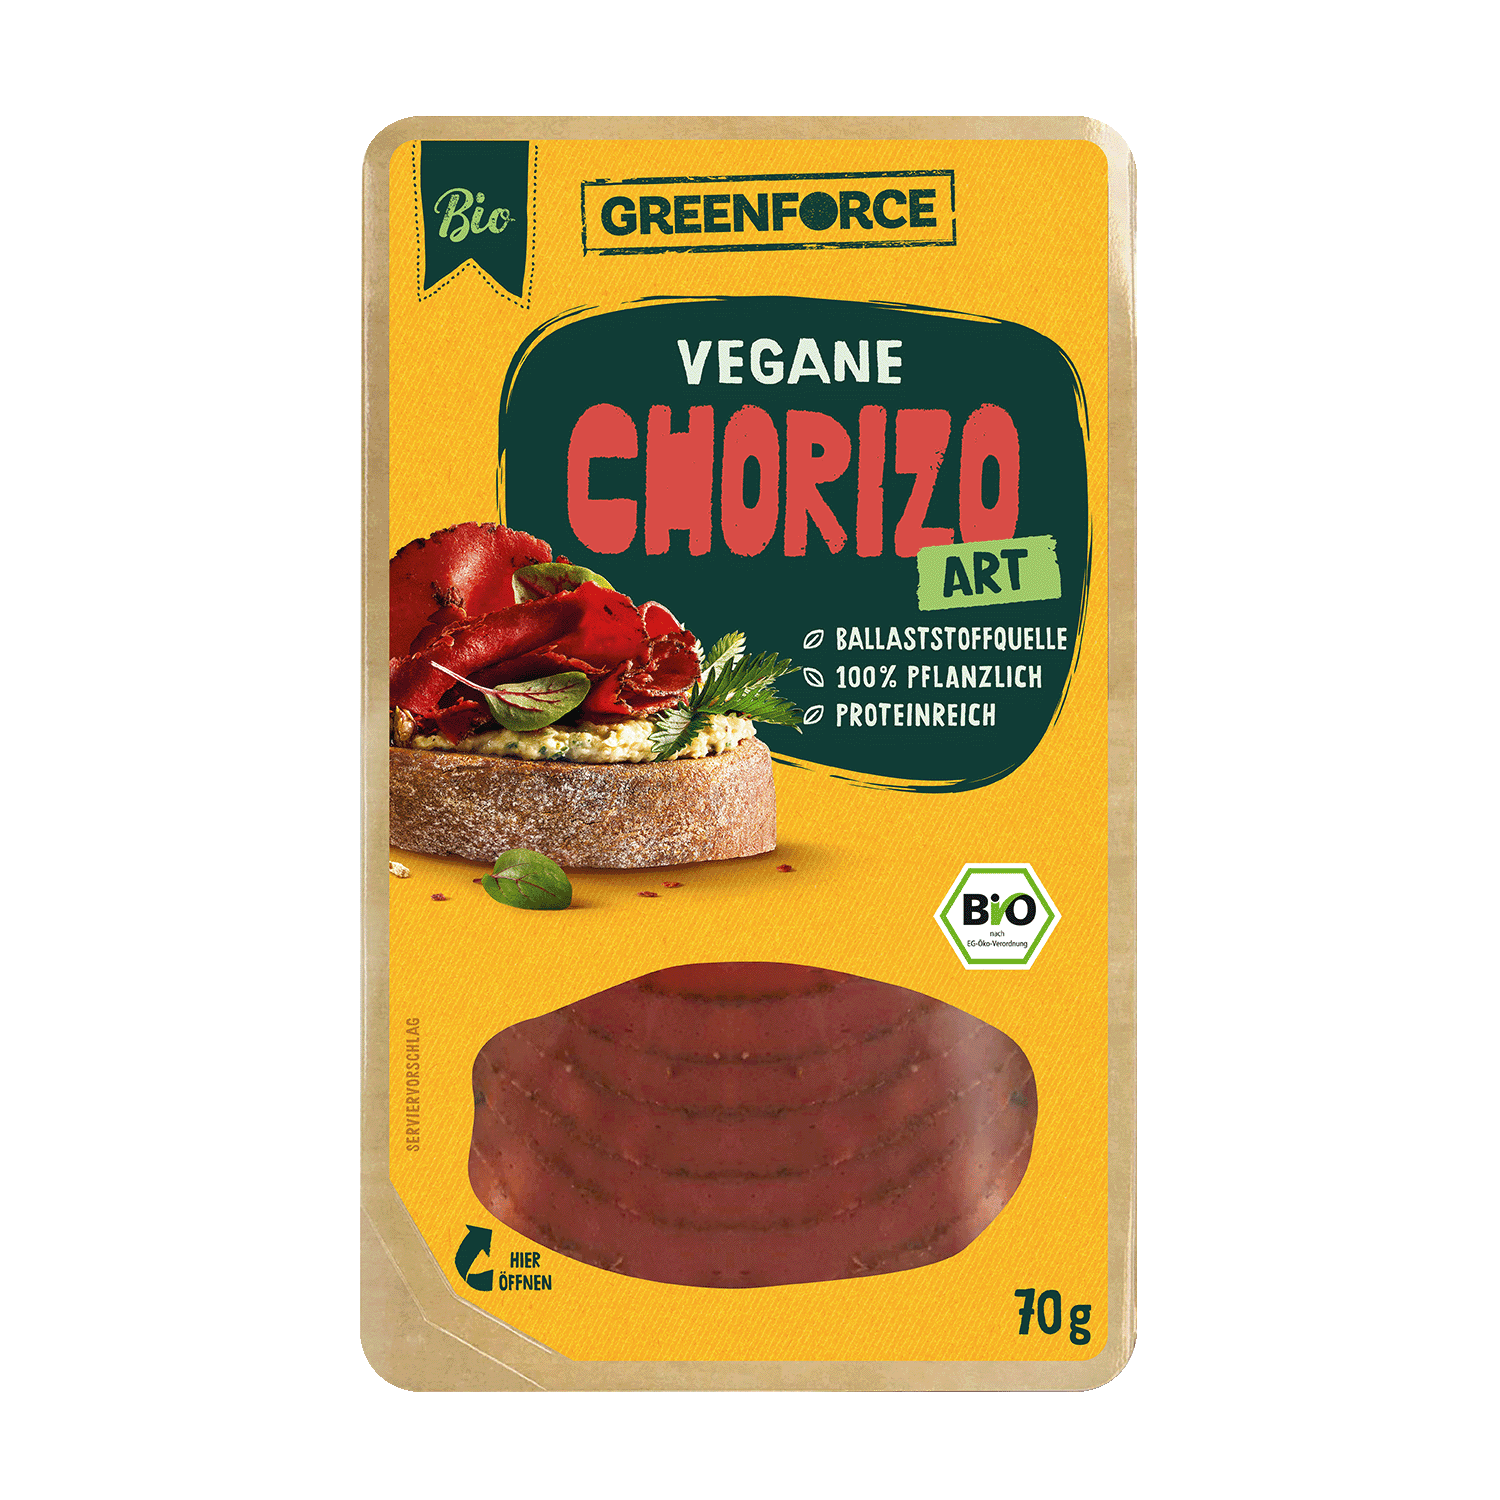 Vegane Chorizo Art, BIO, 70g